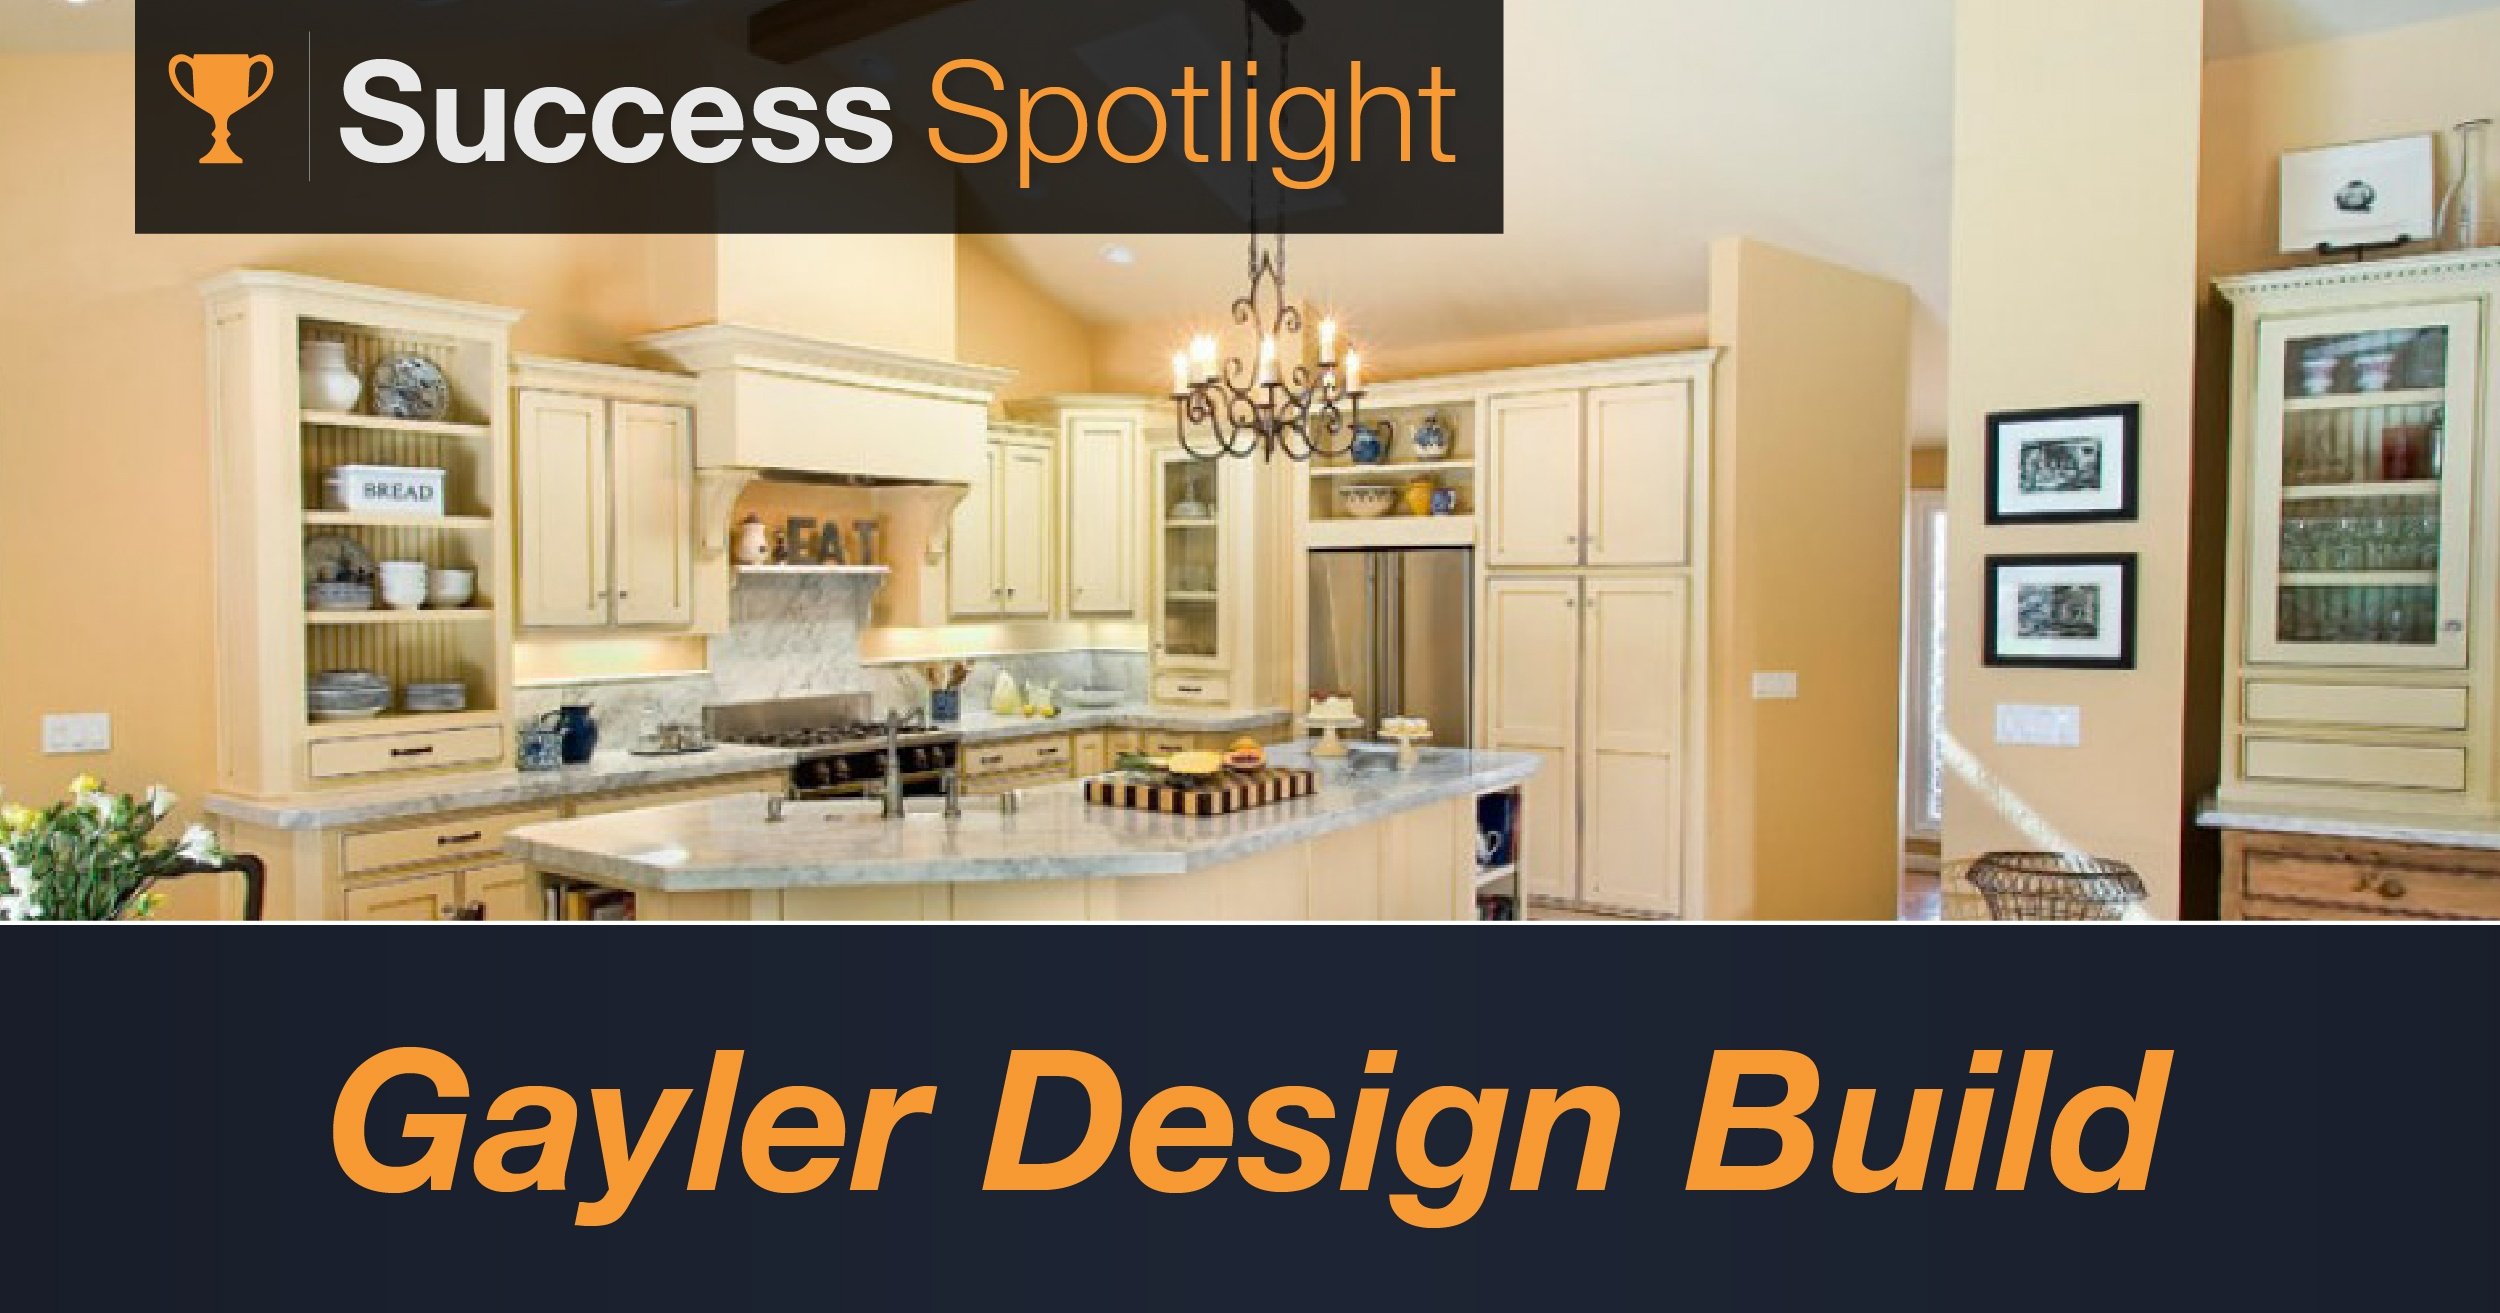 Success Spotlight: Gayler Design Build